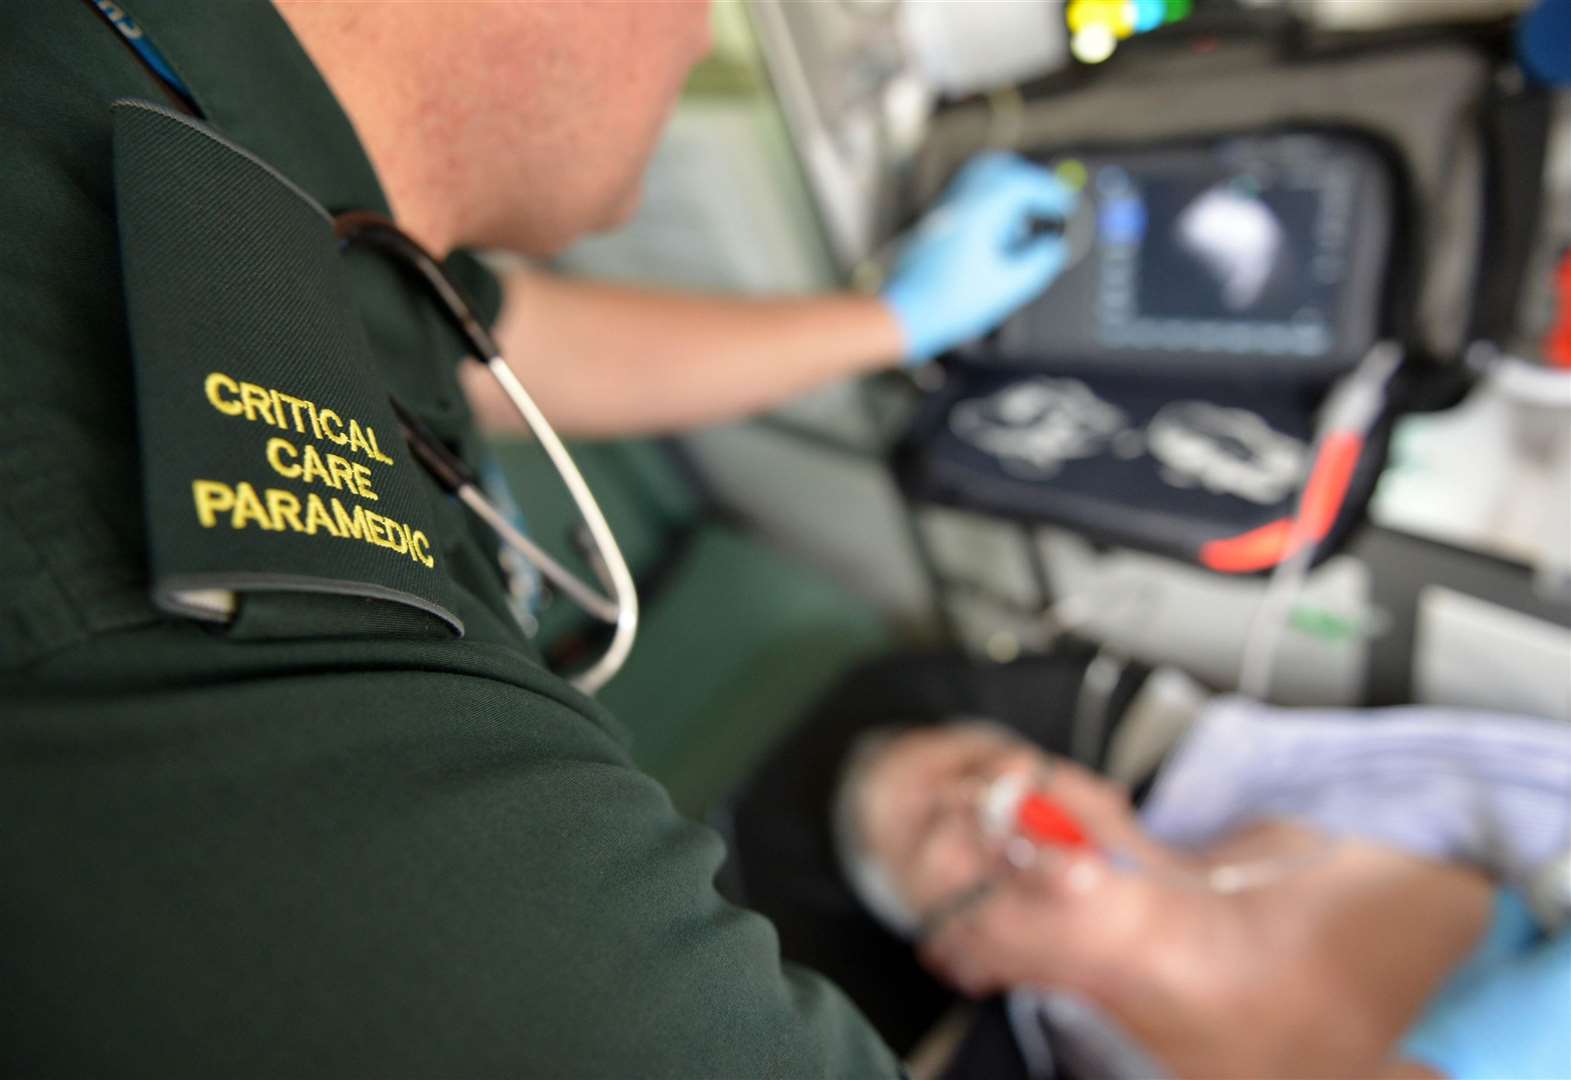 Ambulance response times fall despite many facing long waits